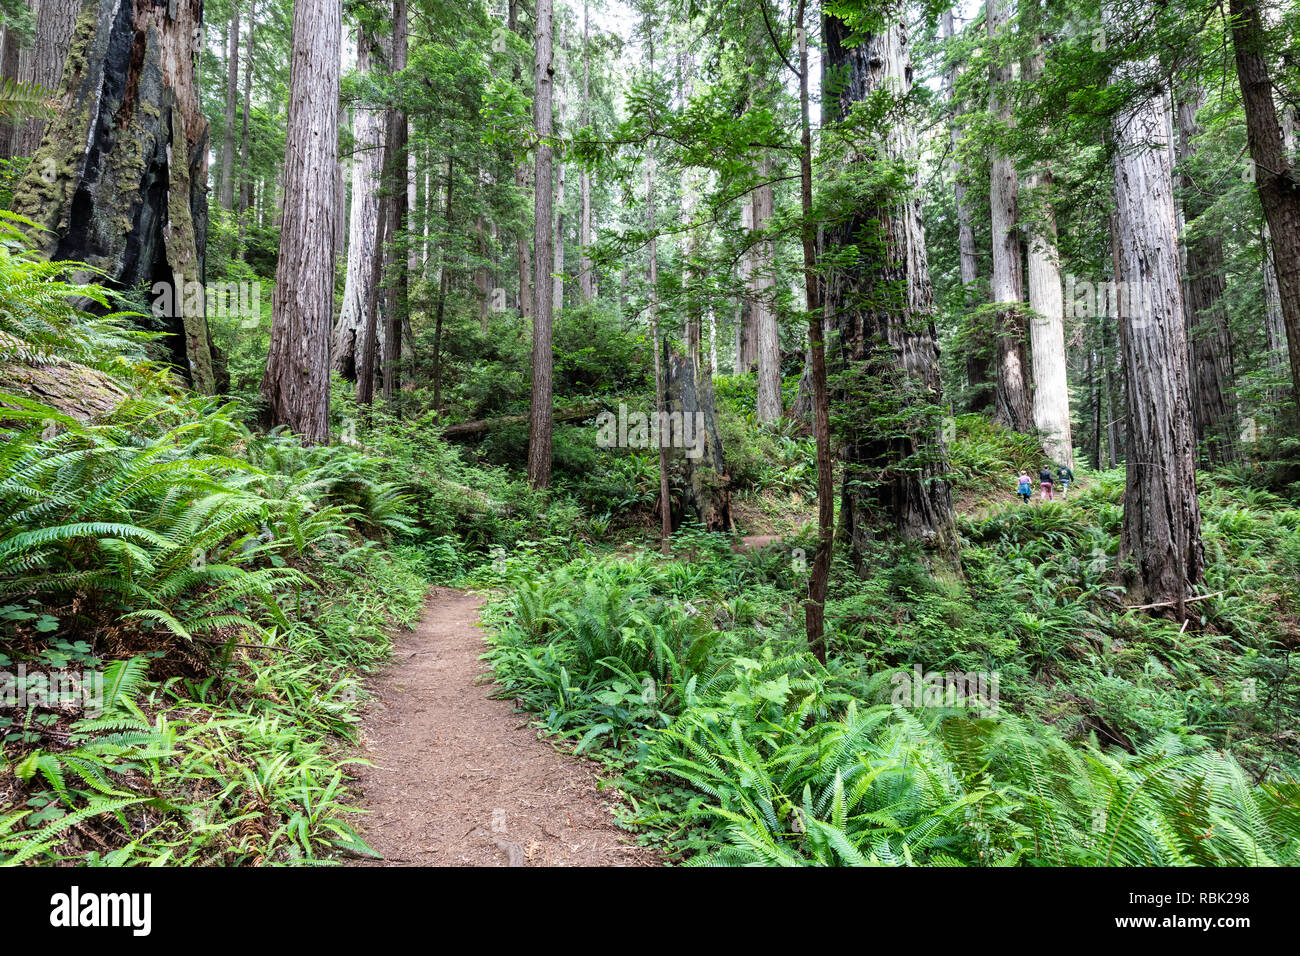 La James Irvine sentier serpente à travers la croissance des séquoias vieux sauvages (Sequoia sempervirens) dans la Région de Prairie Creek Redwoods State Park, Californie. Banque D'Images